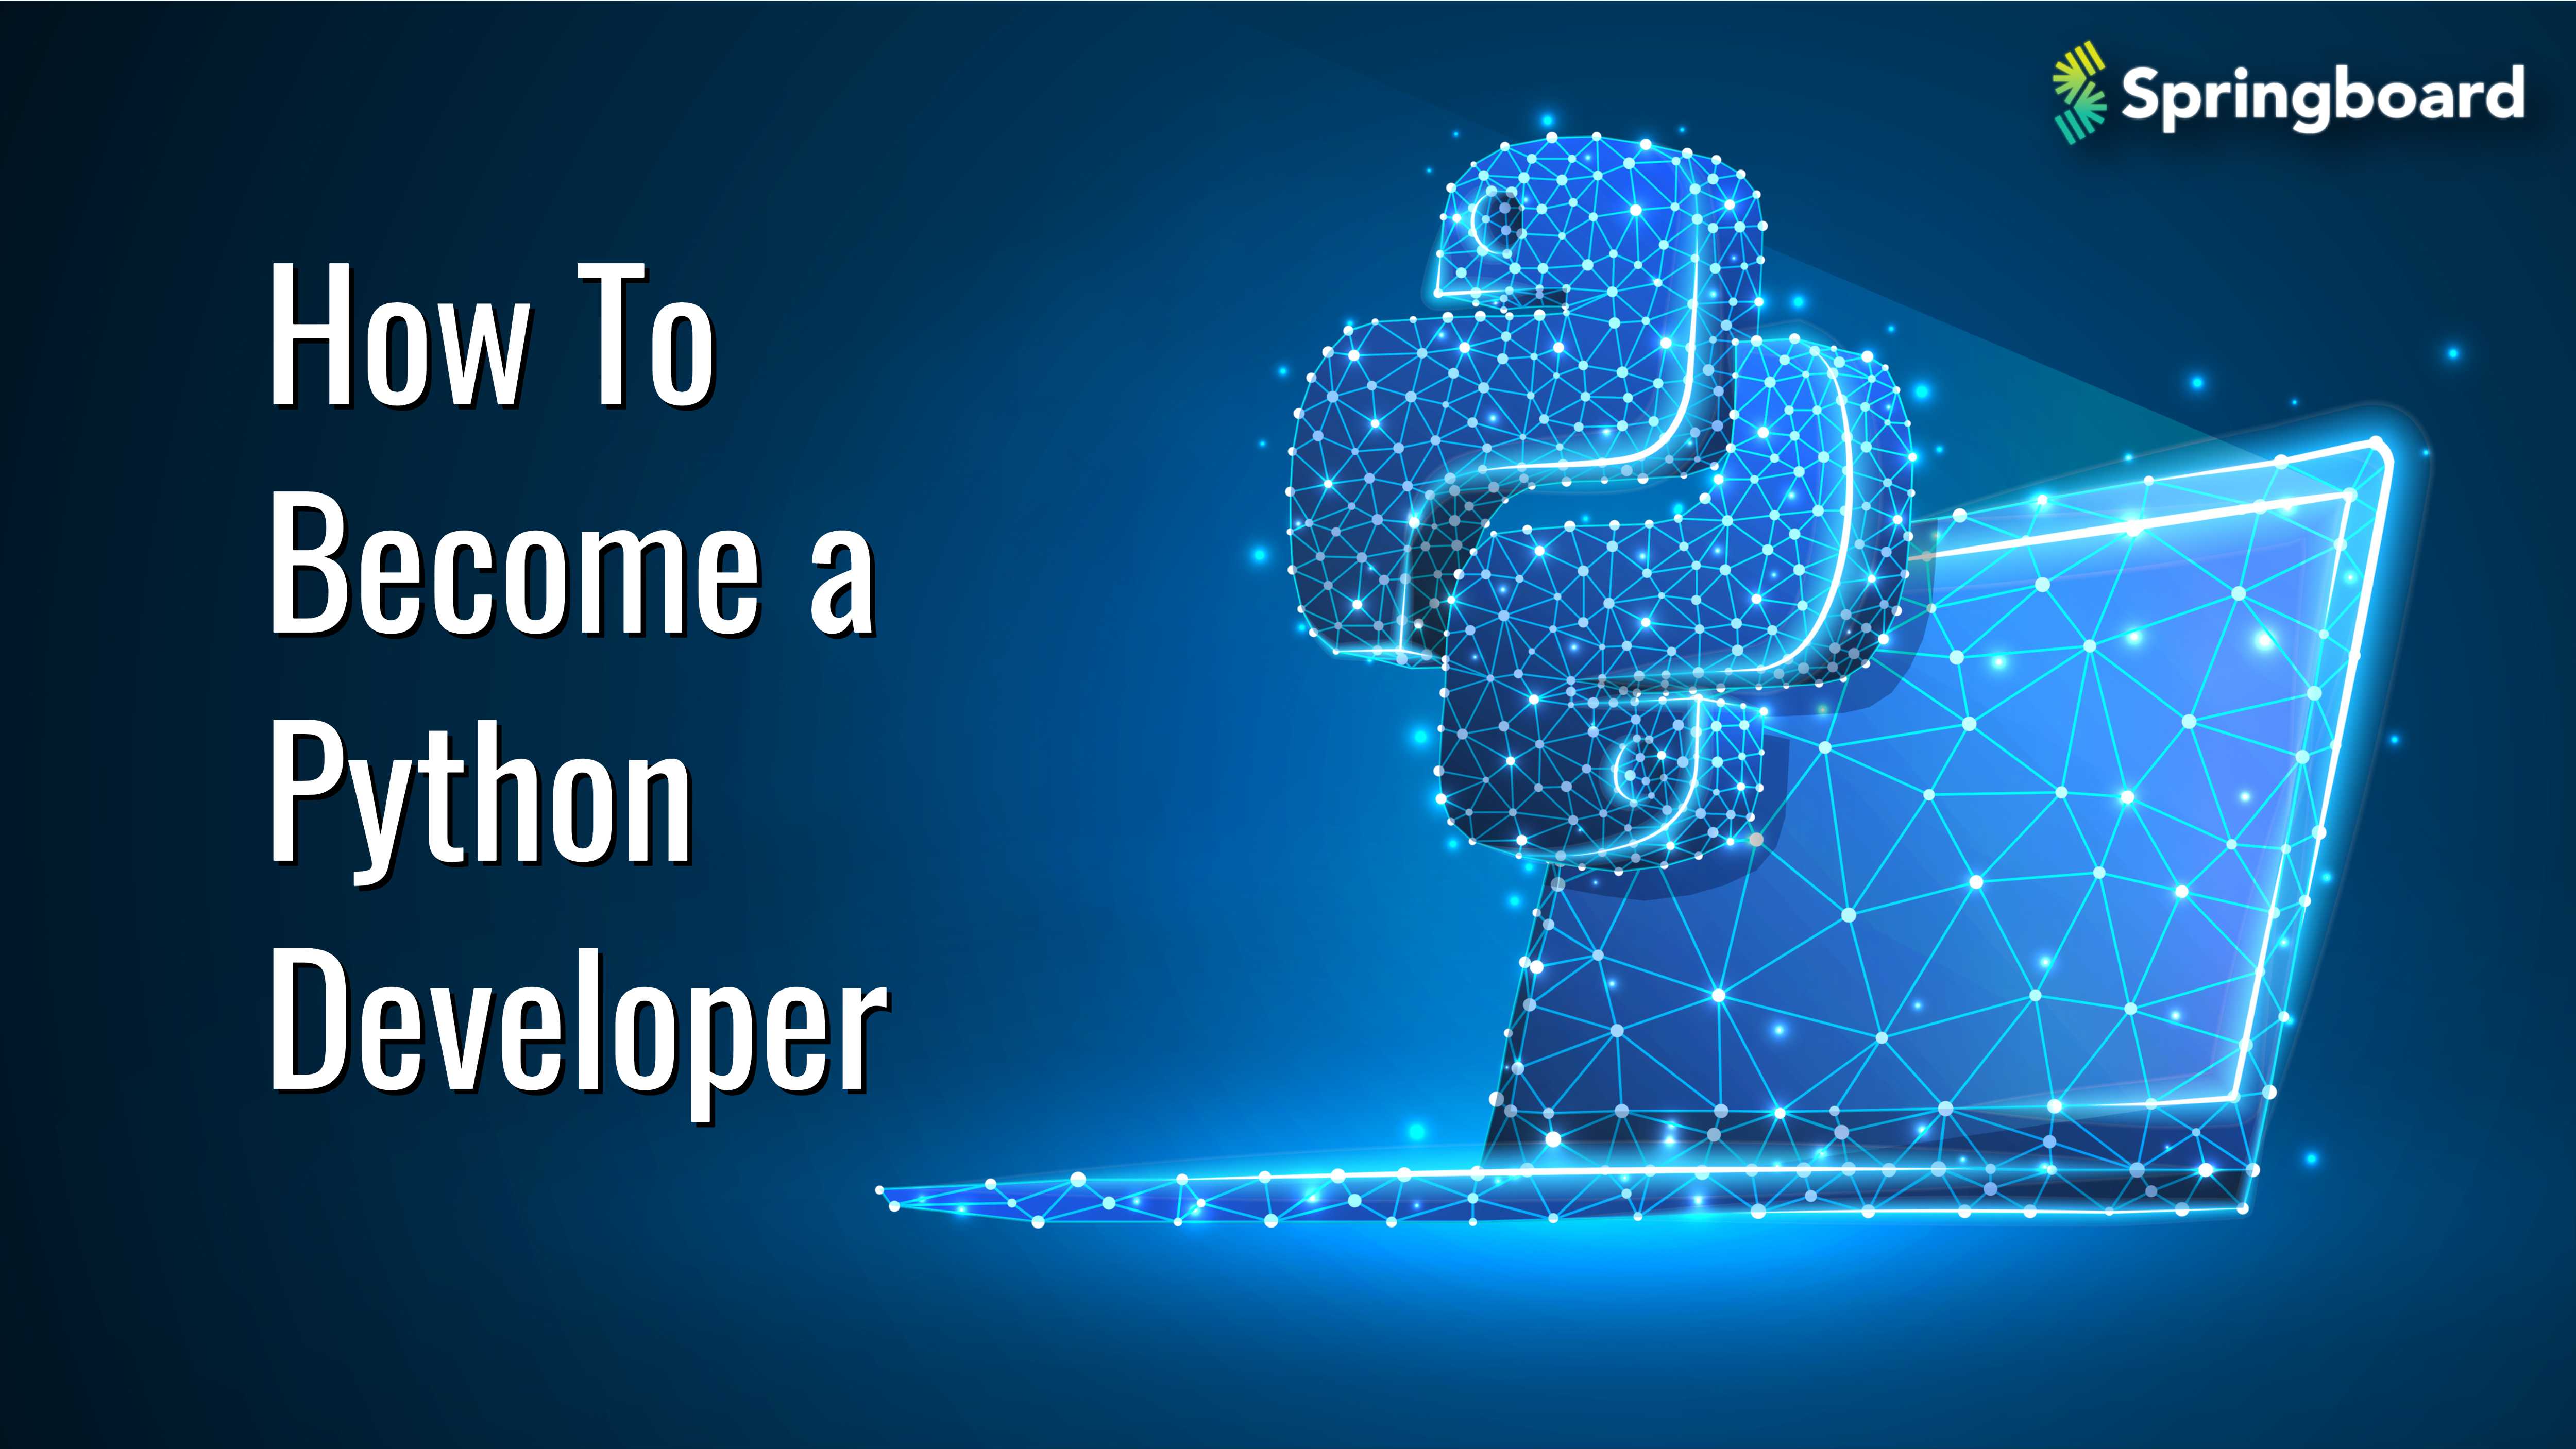 How To Become a Python Developer